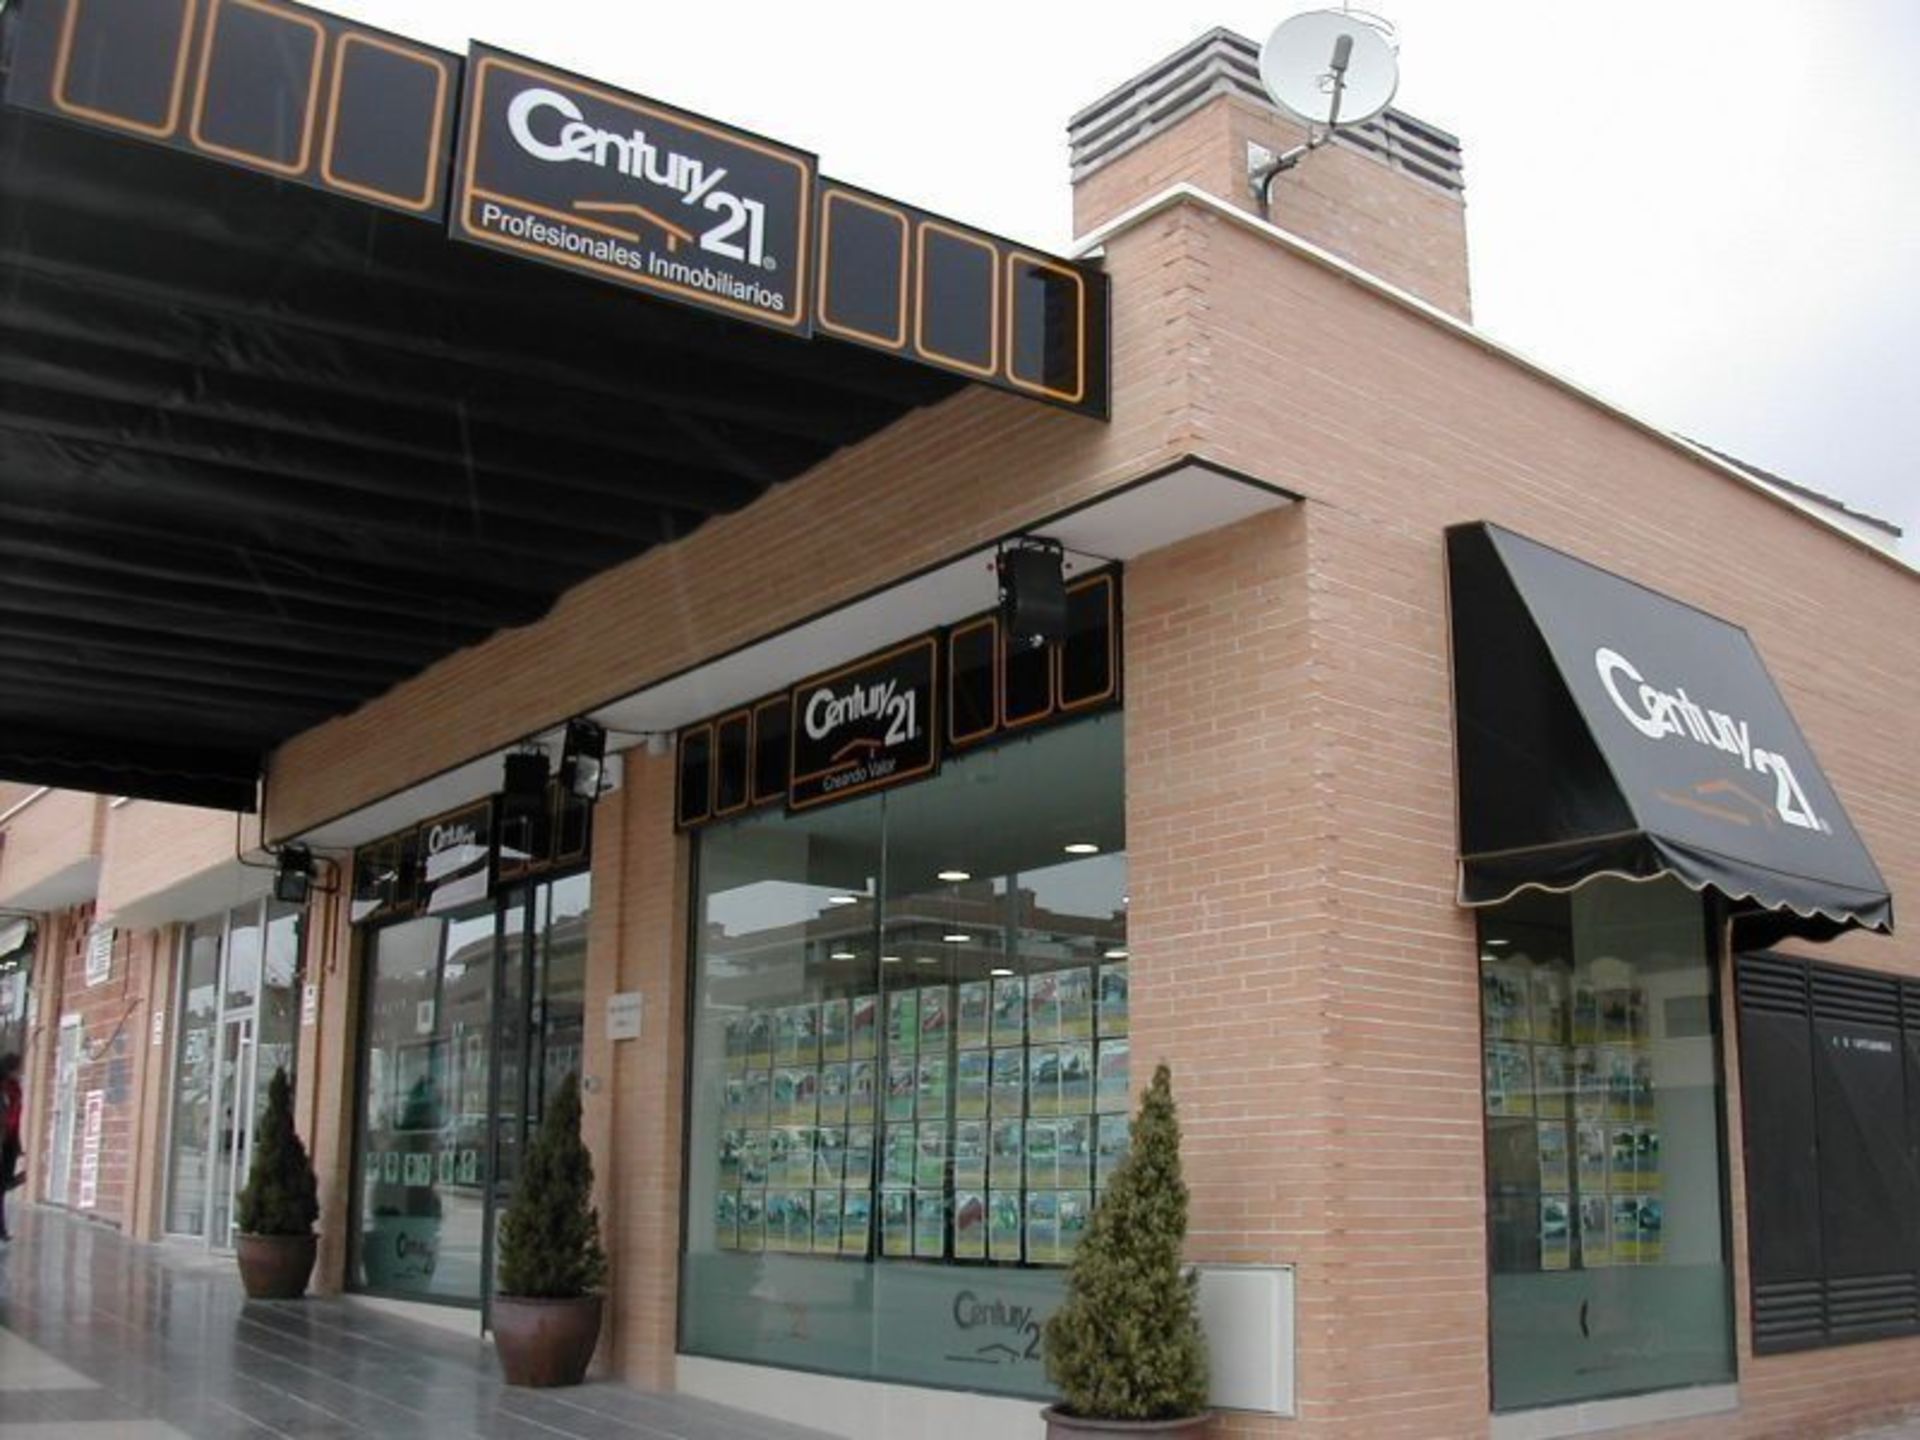 Oficina Inmobiliaria Century 21 en Las Rozas